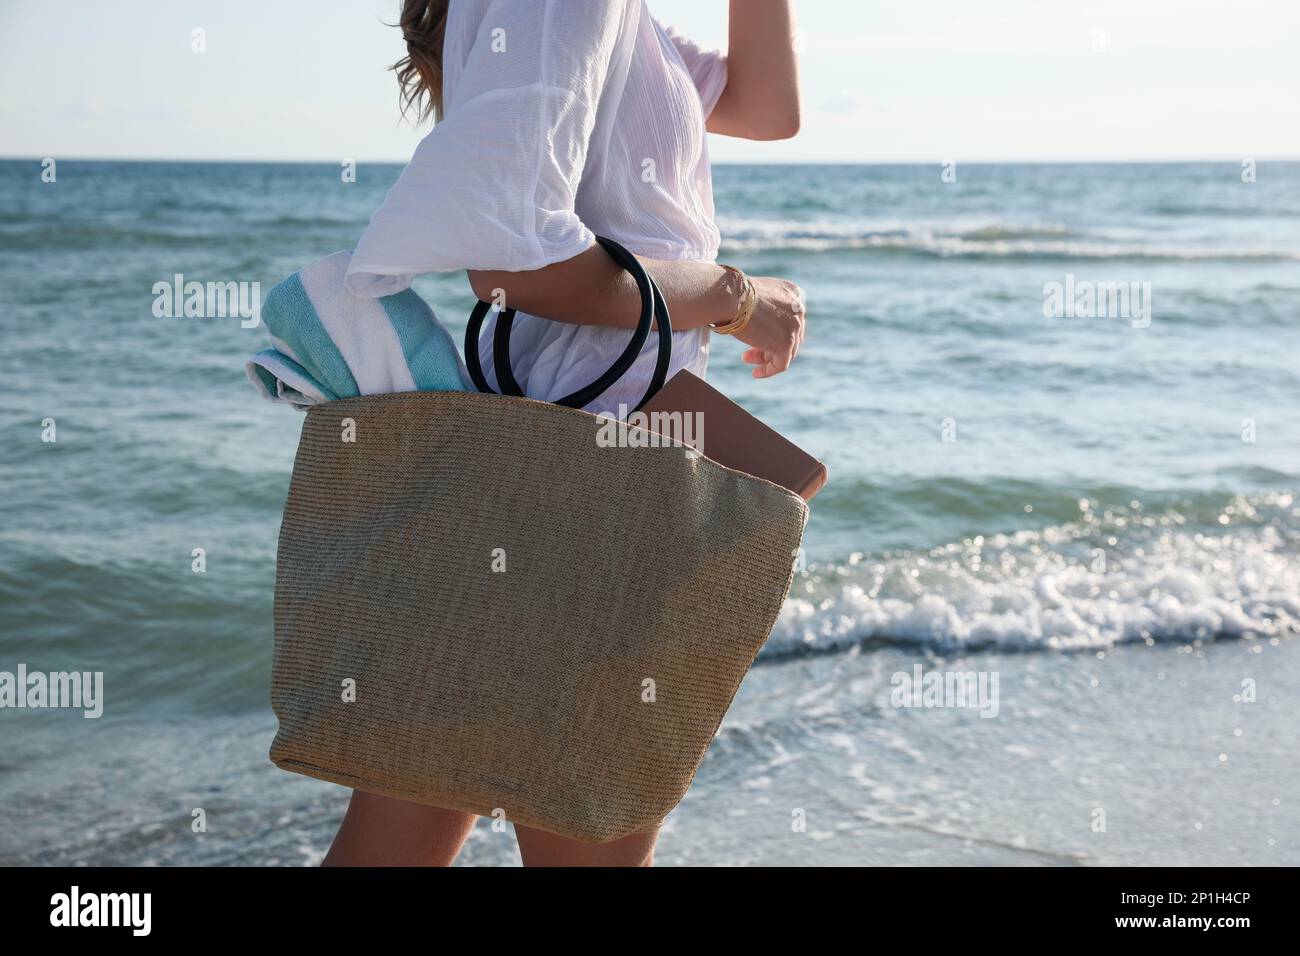 Eine Frau, die eine Tasche mit Strandtuch in der Nähe des Meeres trägt,  Nahaufnahme Stockfotografie - Alamy